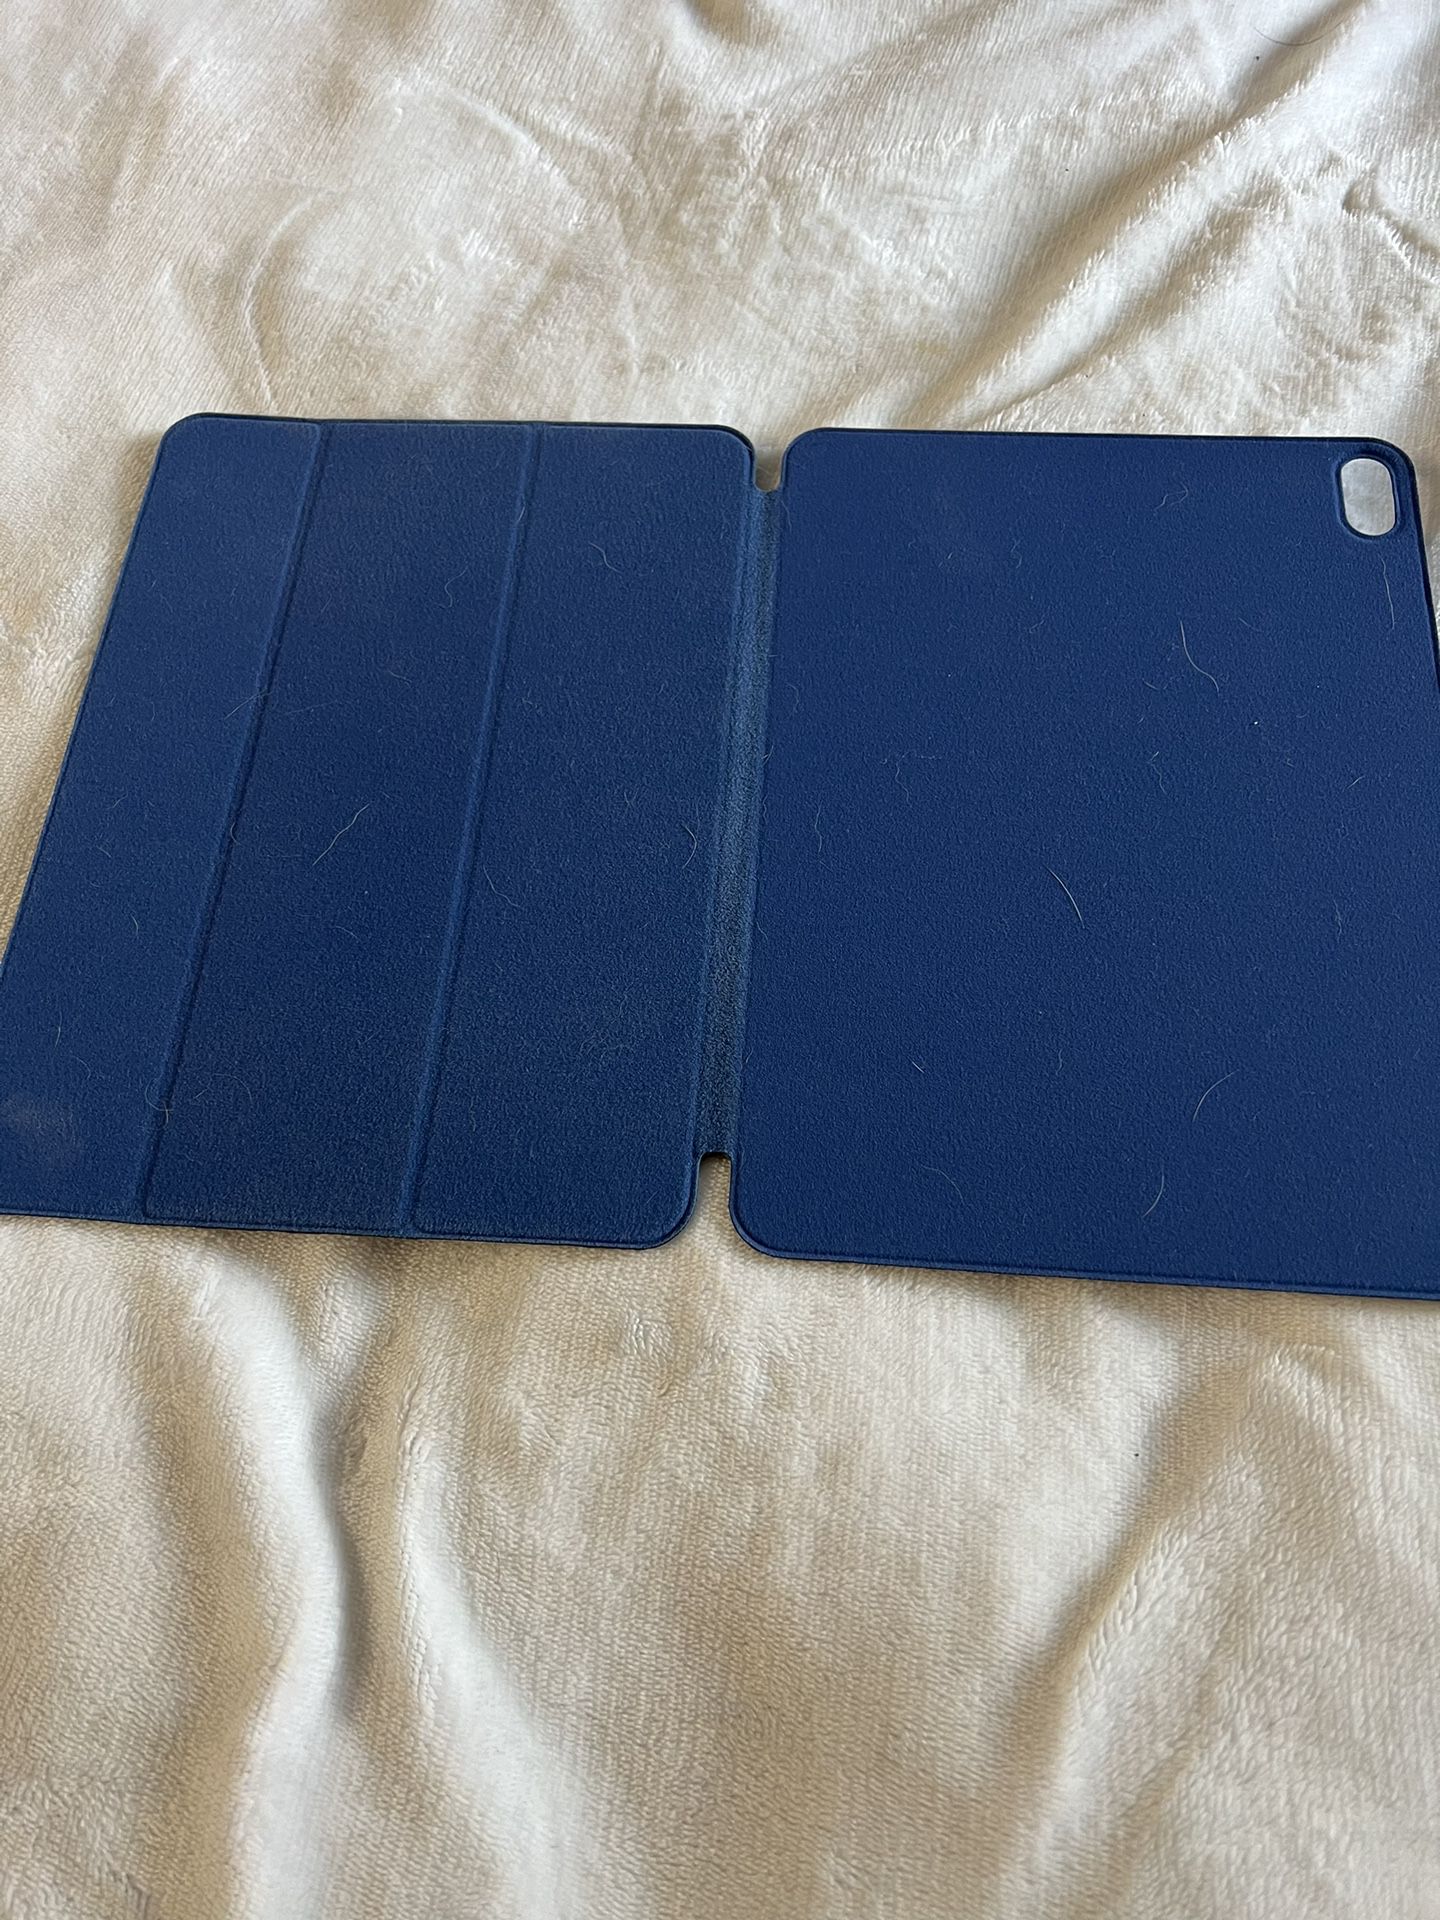 Blue iPad Cover